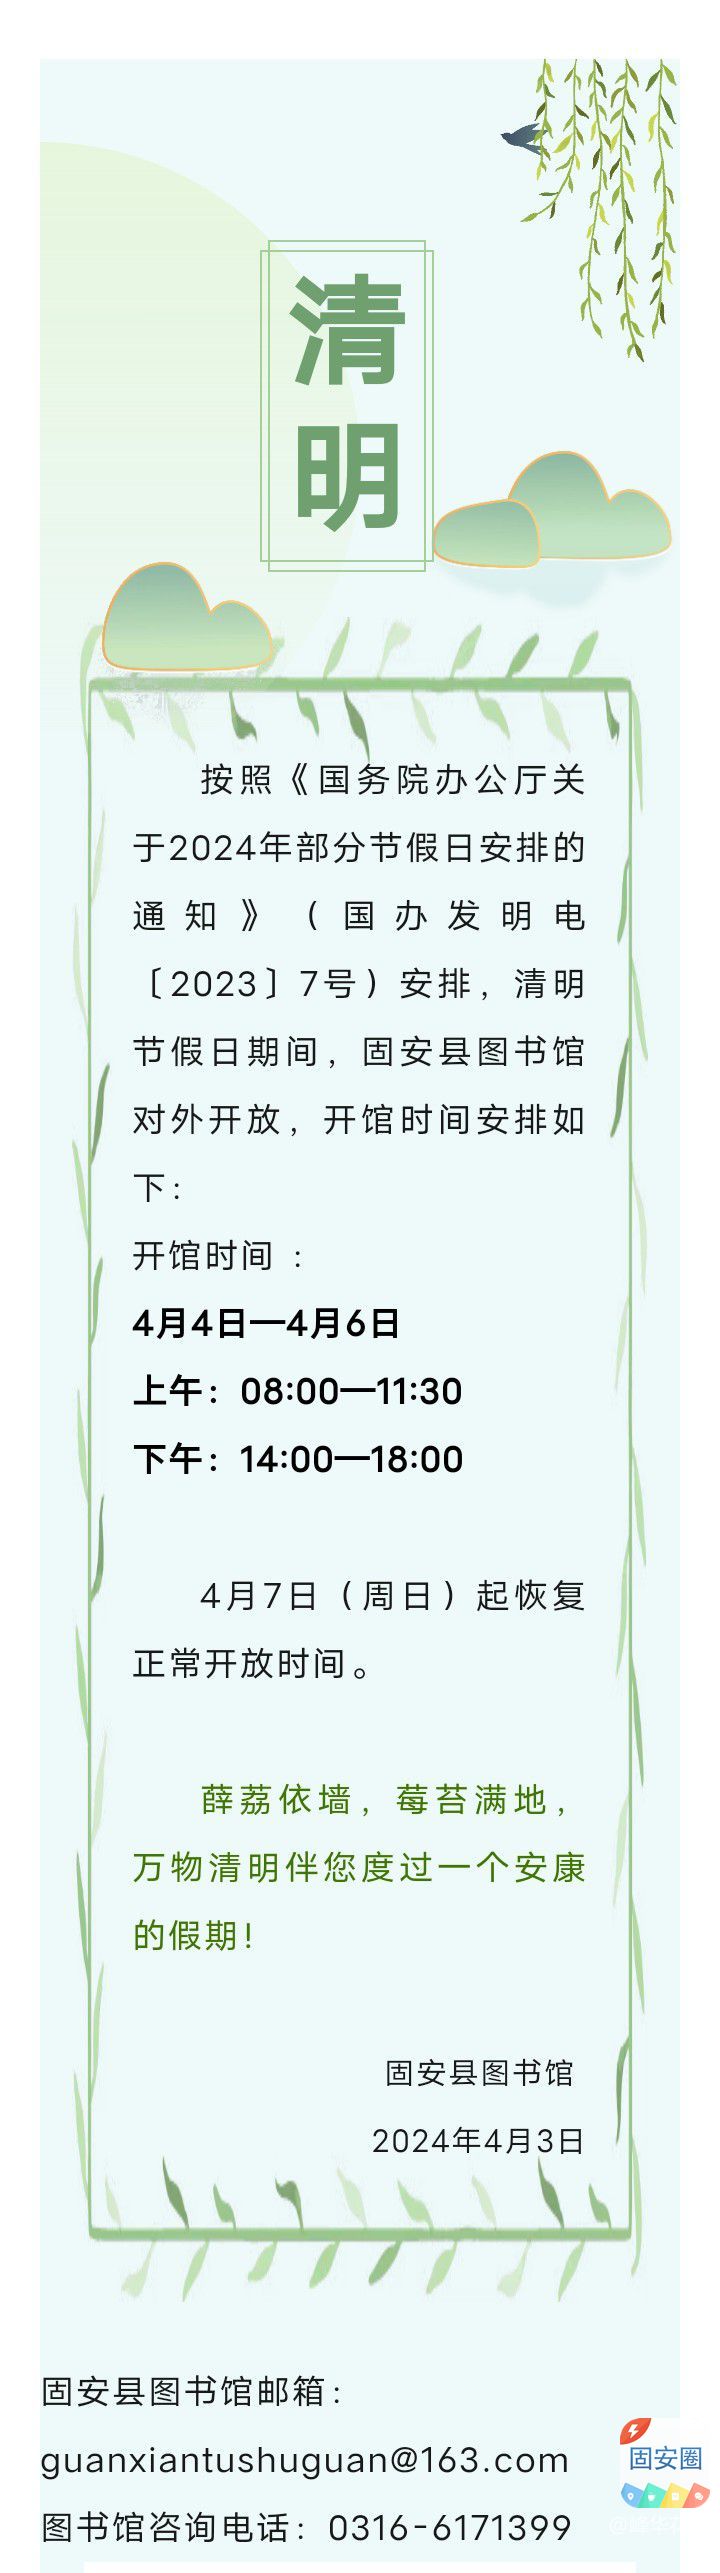 固安县图书馆2024年清明节开放安排6131 作者:峰华花园 帖子ID:297900 